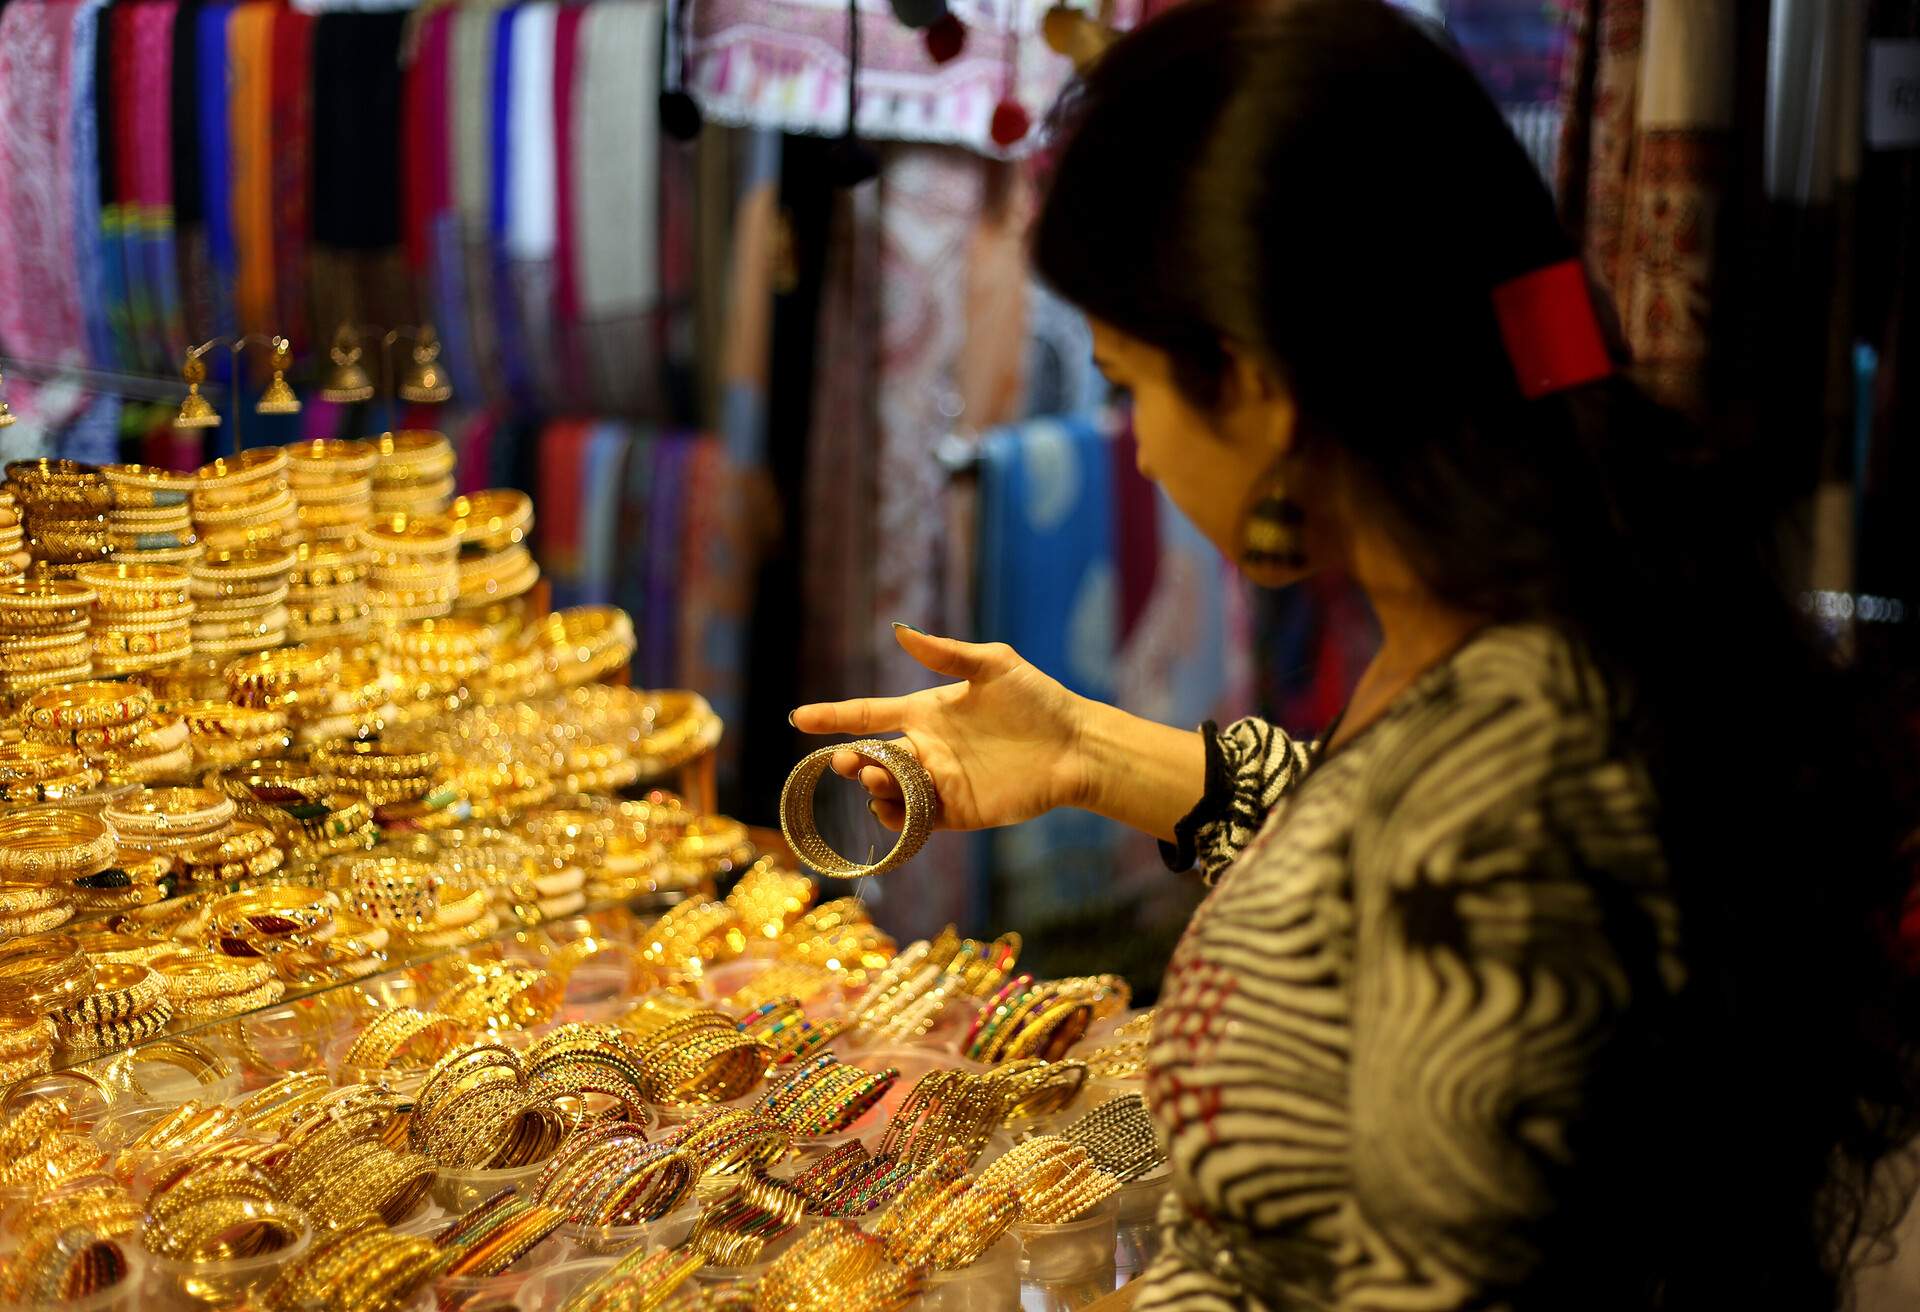 Young women choosing jewelry from jewelry shop in Meena Bazaar, Red Fort, Delhi, India.